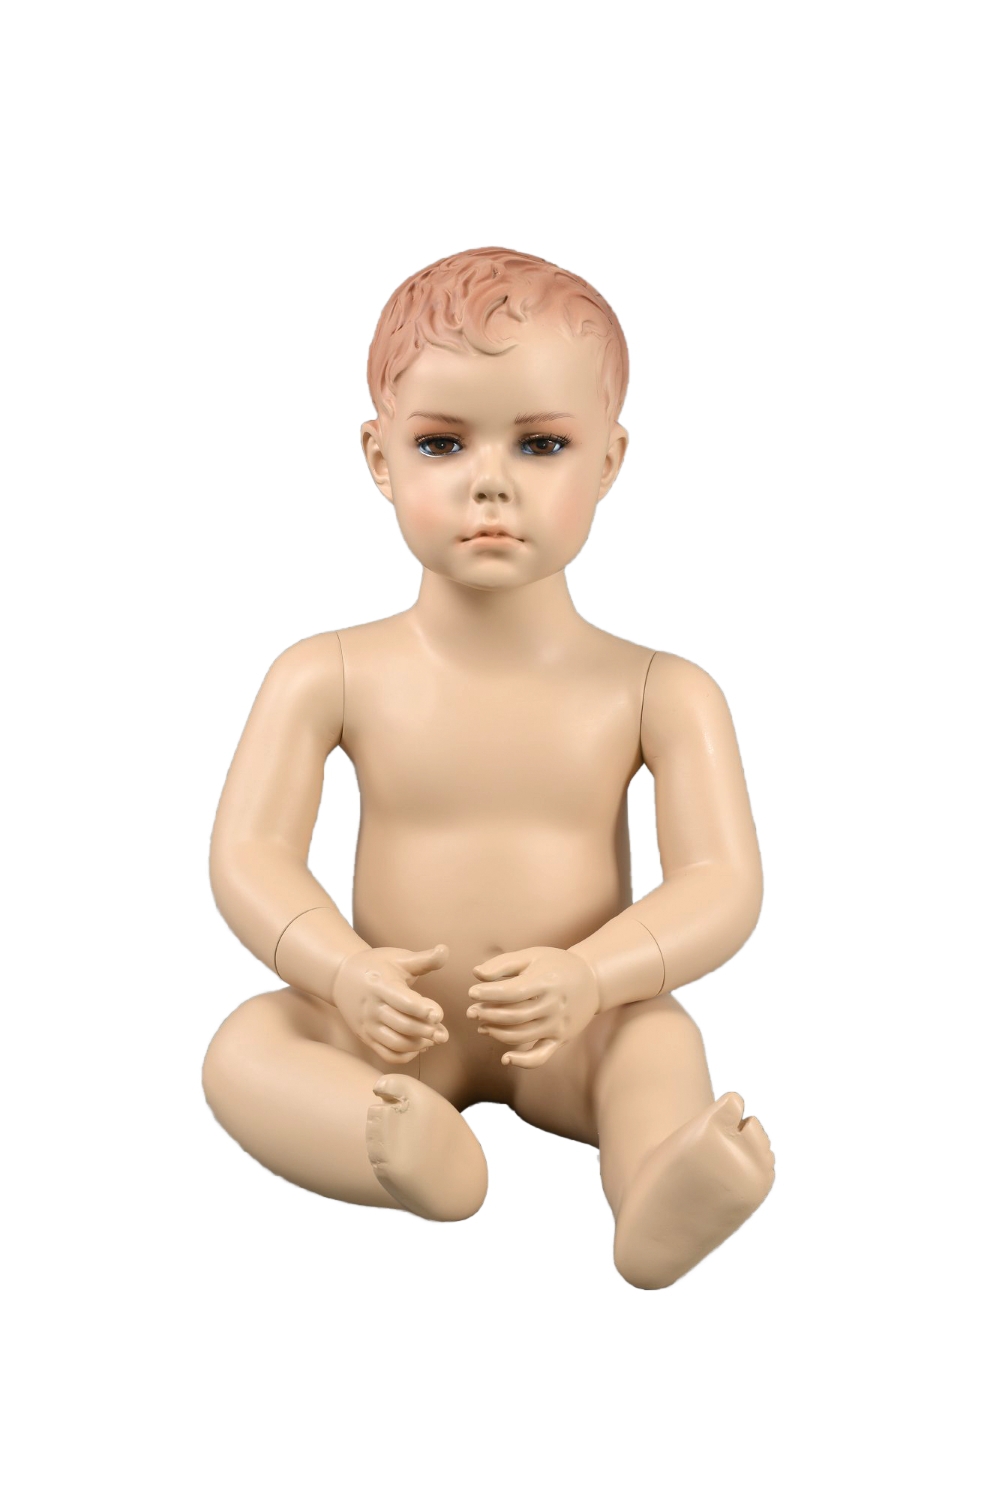 Schaufensterfigur "Bodysculpt" EVO2 Junge 1 Jahr sitzend hautfarbe